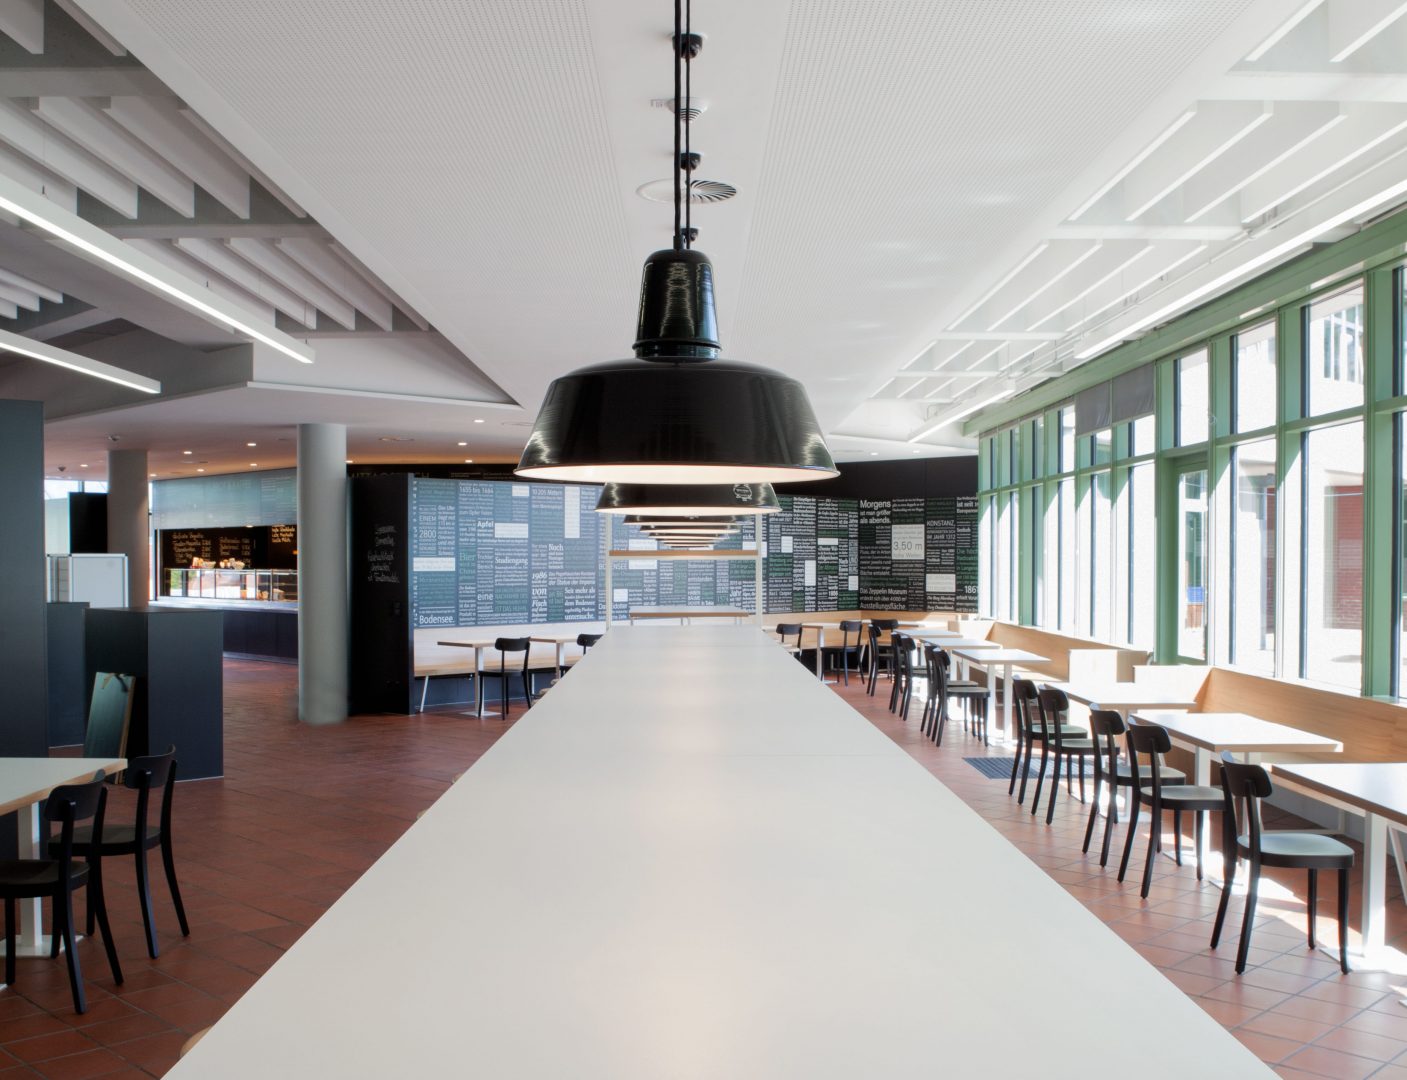 Tisch in der Schulmensa des Berufsschulzentrums Friedrichshafen gestaltet von atelier 522.